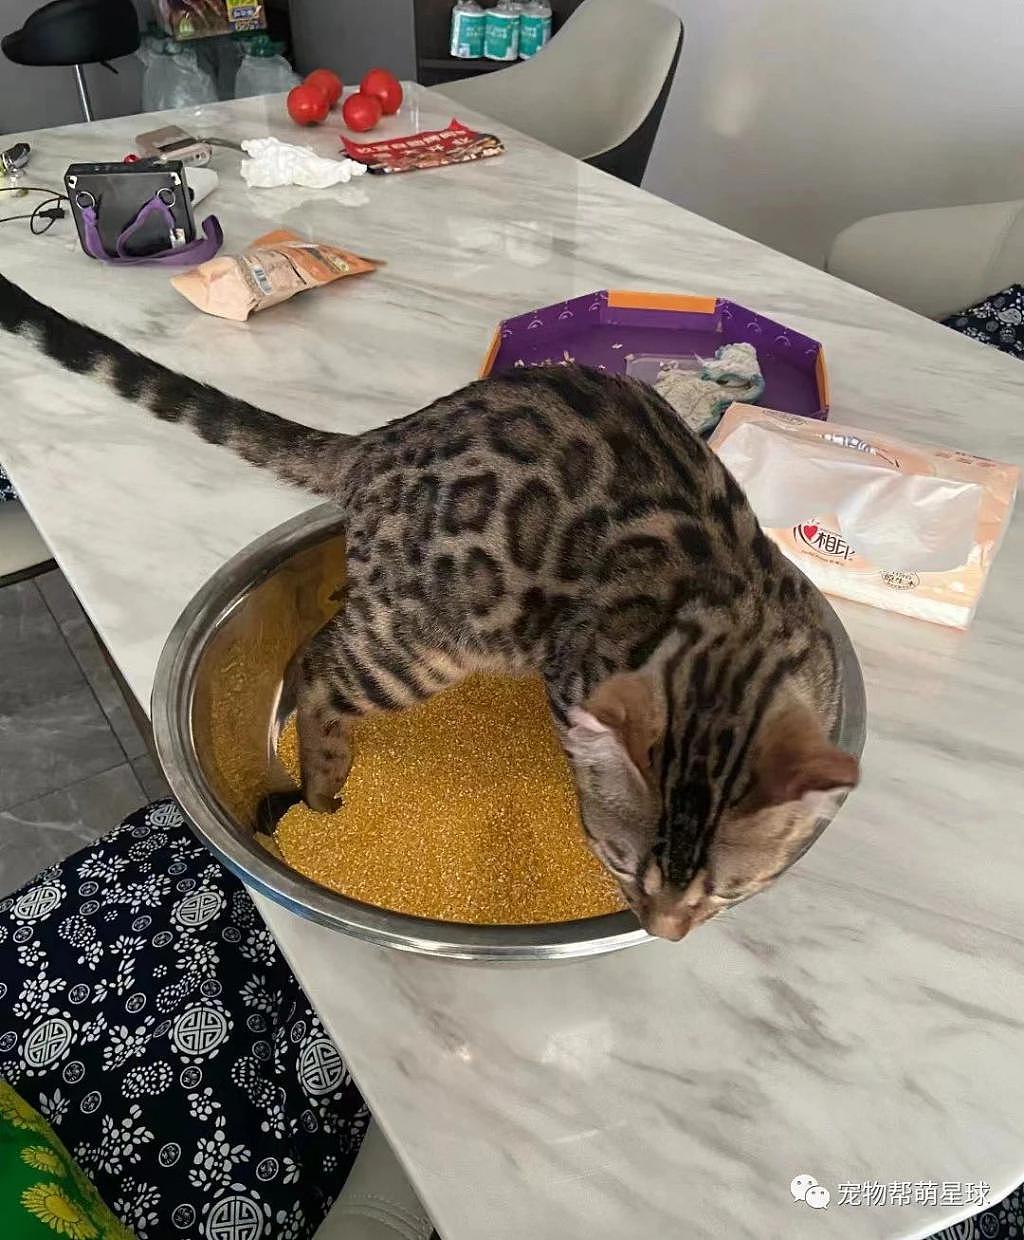 猫咪错把玉米碗当猫砂盆，正在酝酿 shi 意，还好铲屎官及时发现 . - 1